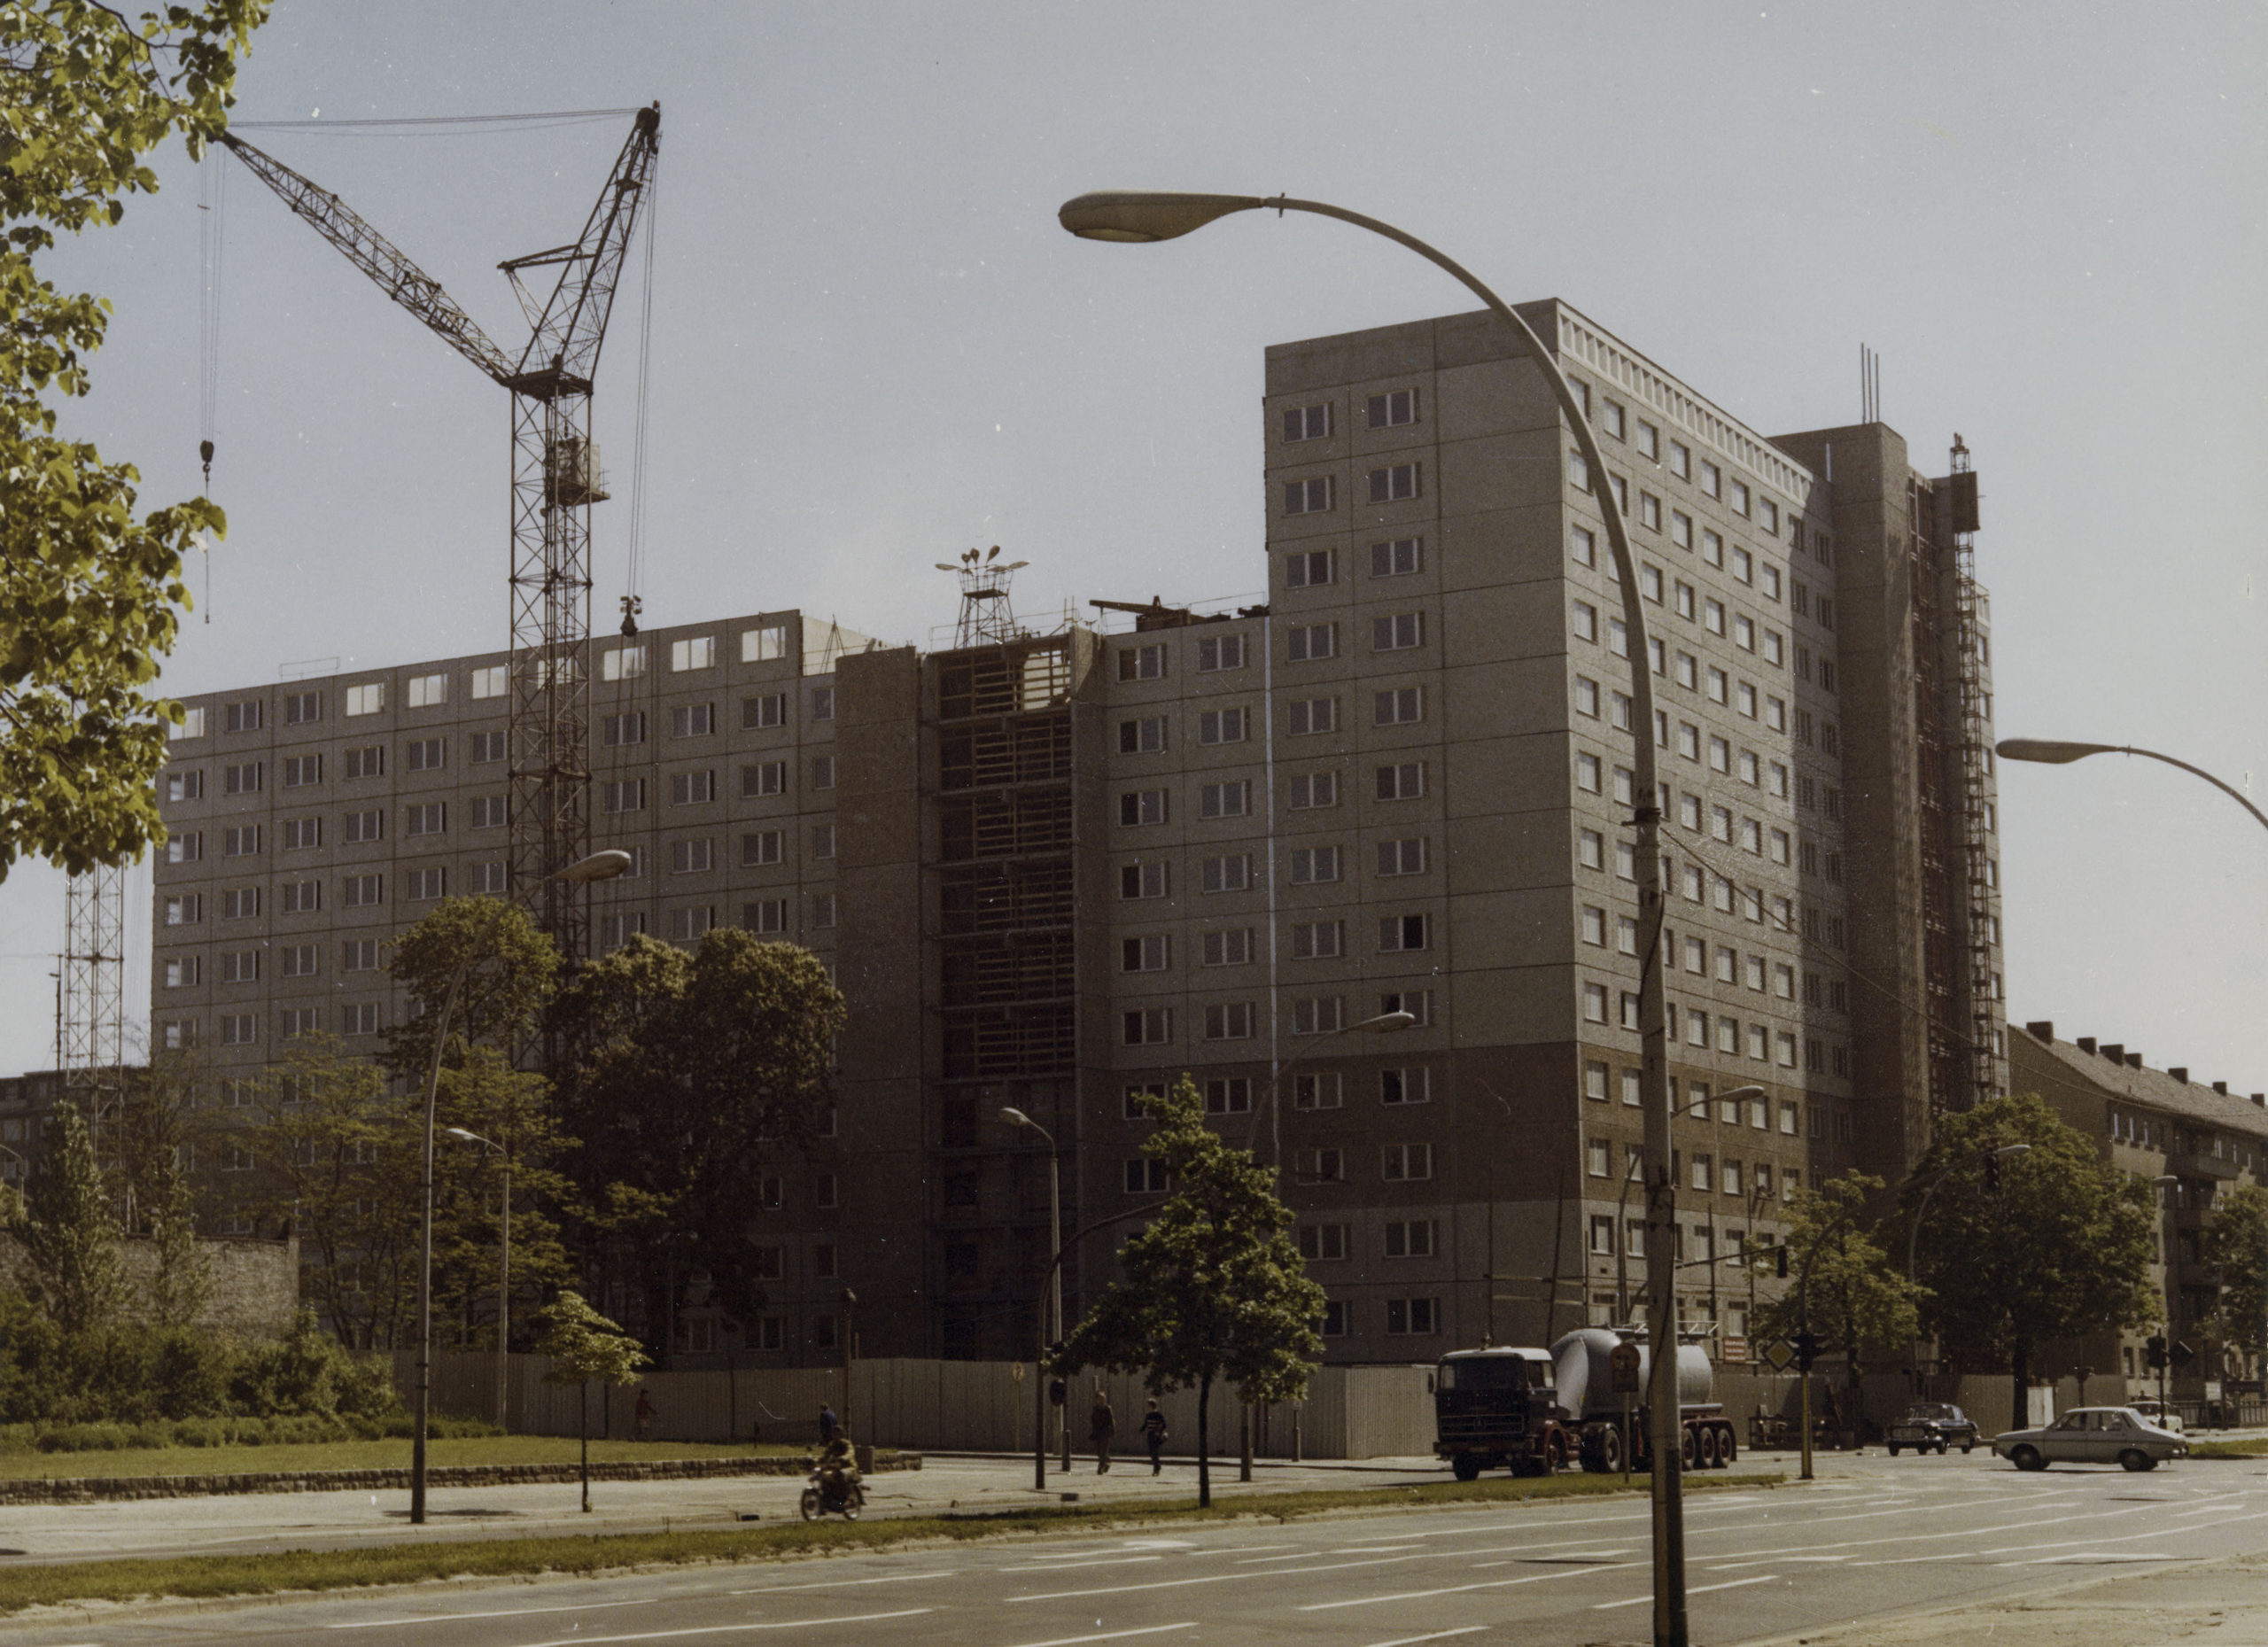 Erweiterung der Stasi-Zentrale, 1977/78. Foto: Bundesarchiv